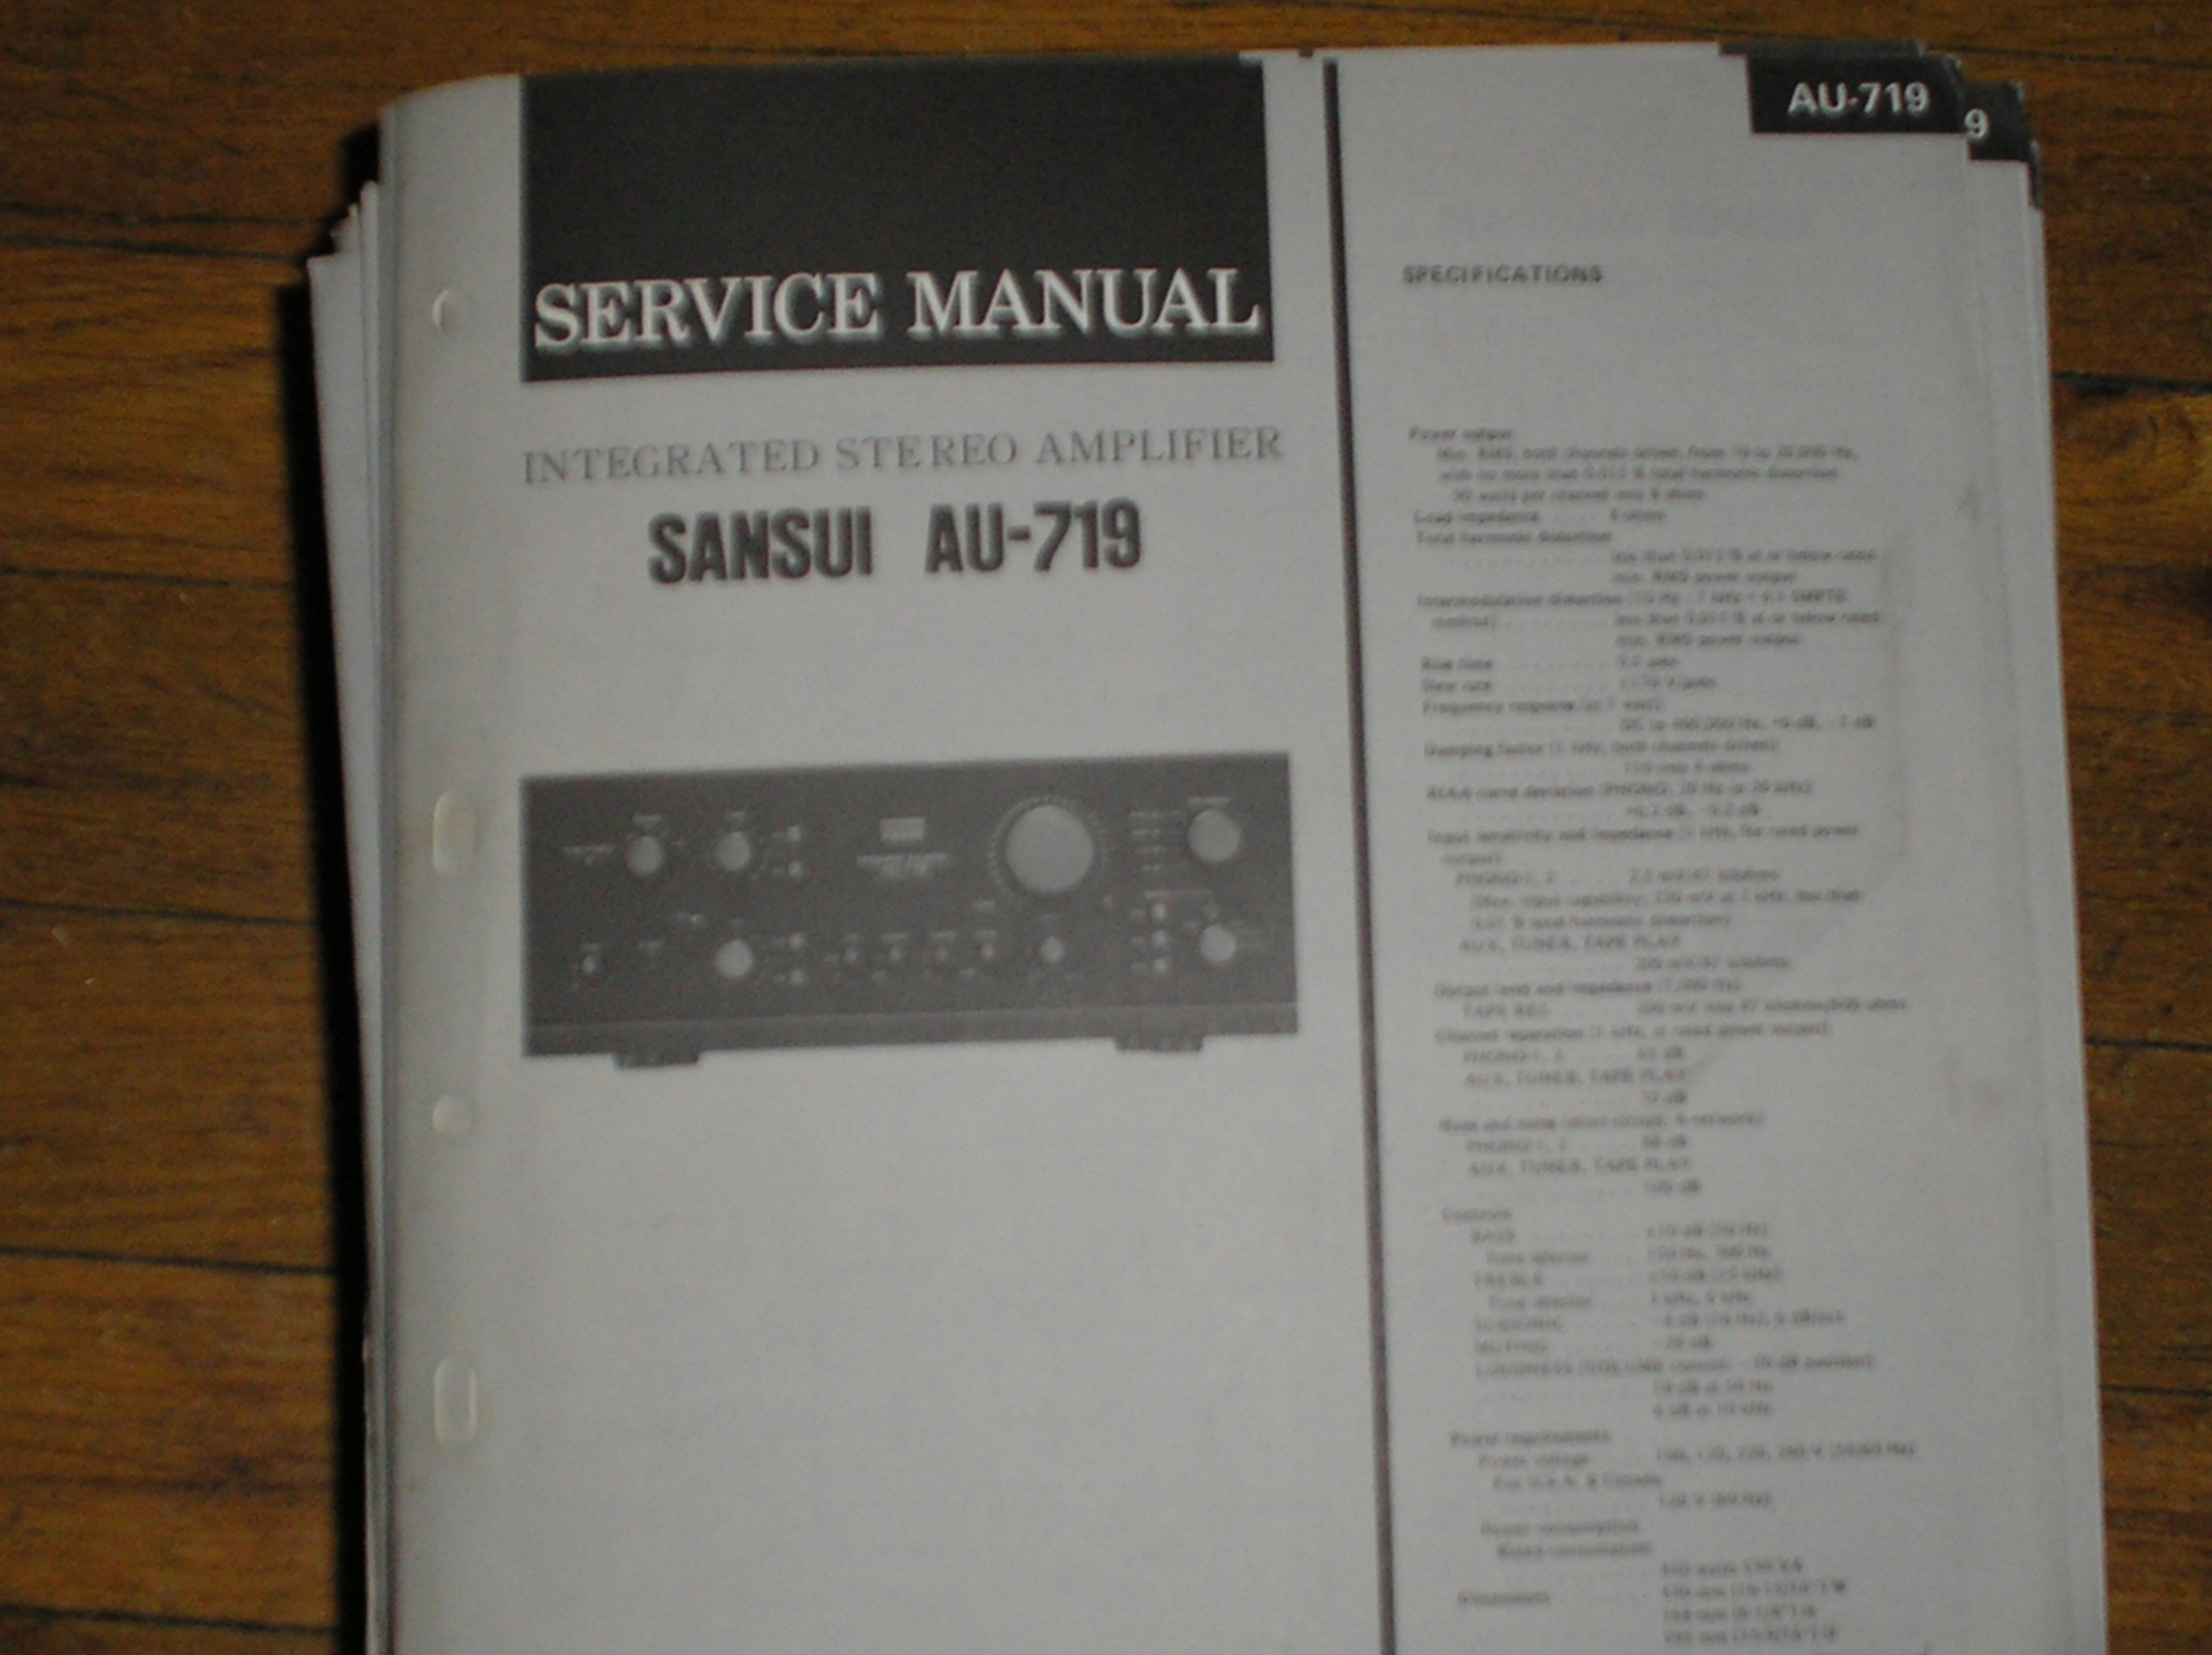 AU-719 Amplifier Service Manual